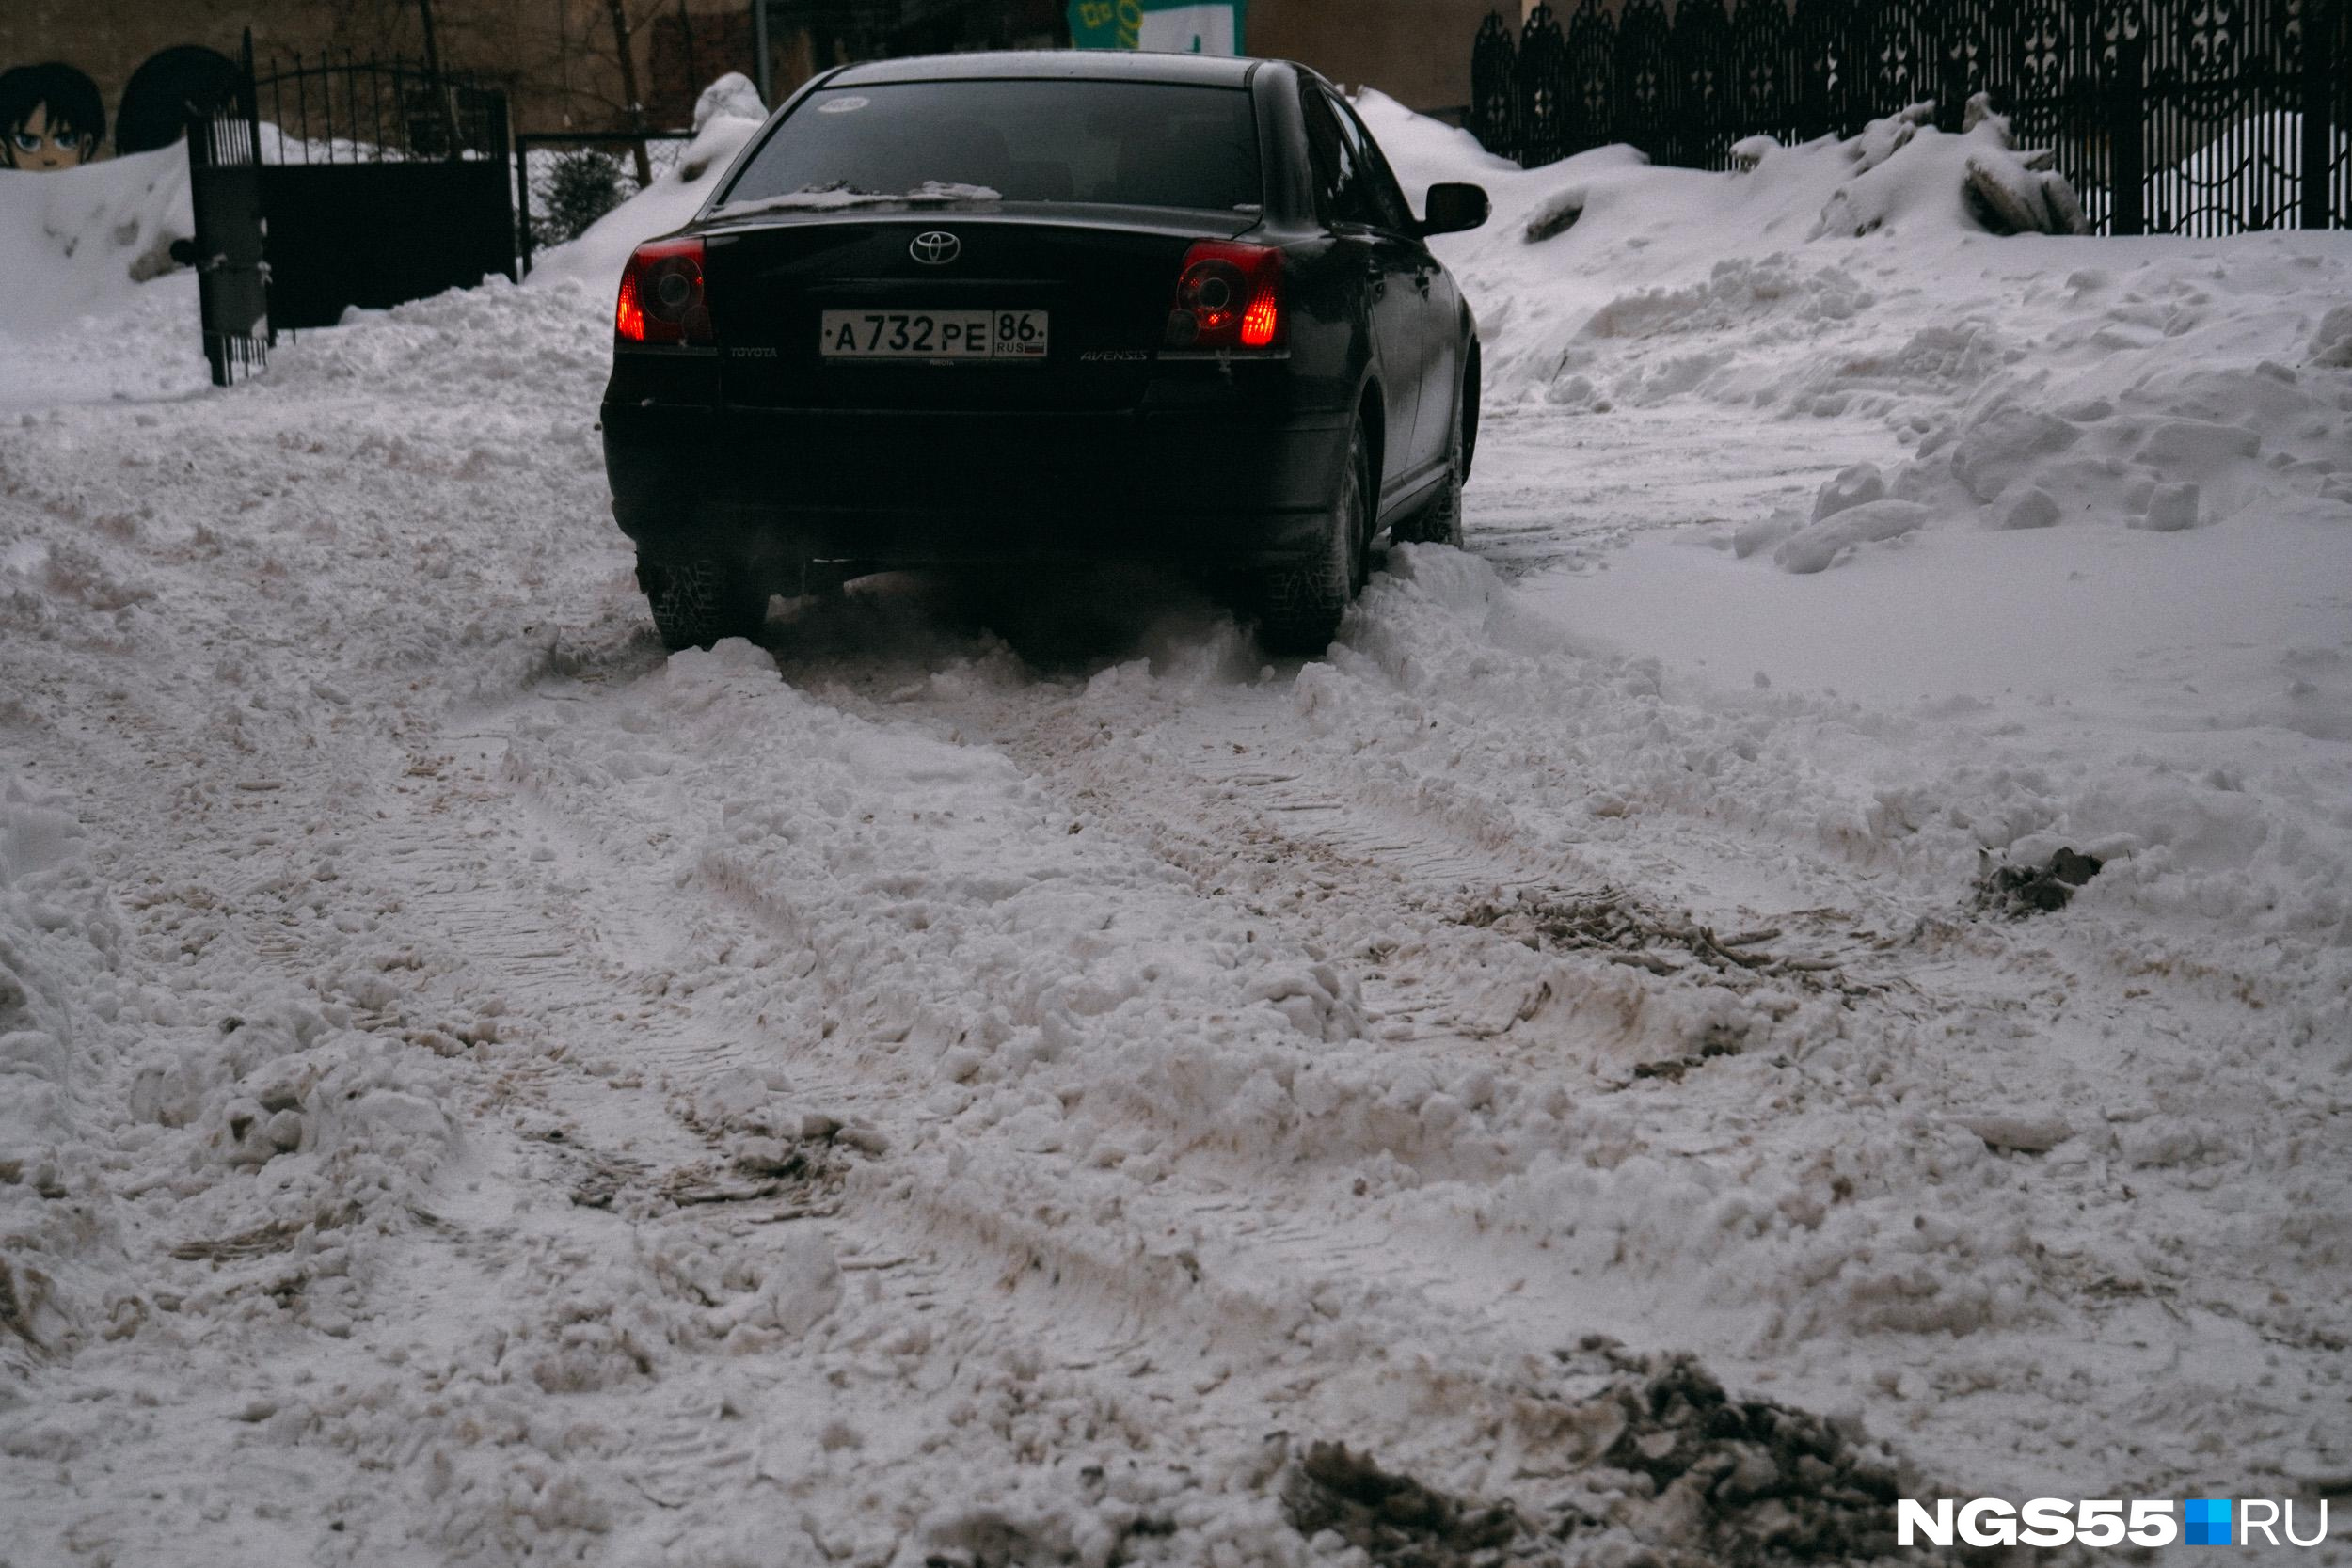 Снег выпал на дорогах — ГИБДД предупреждает забайкальцев об опасности